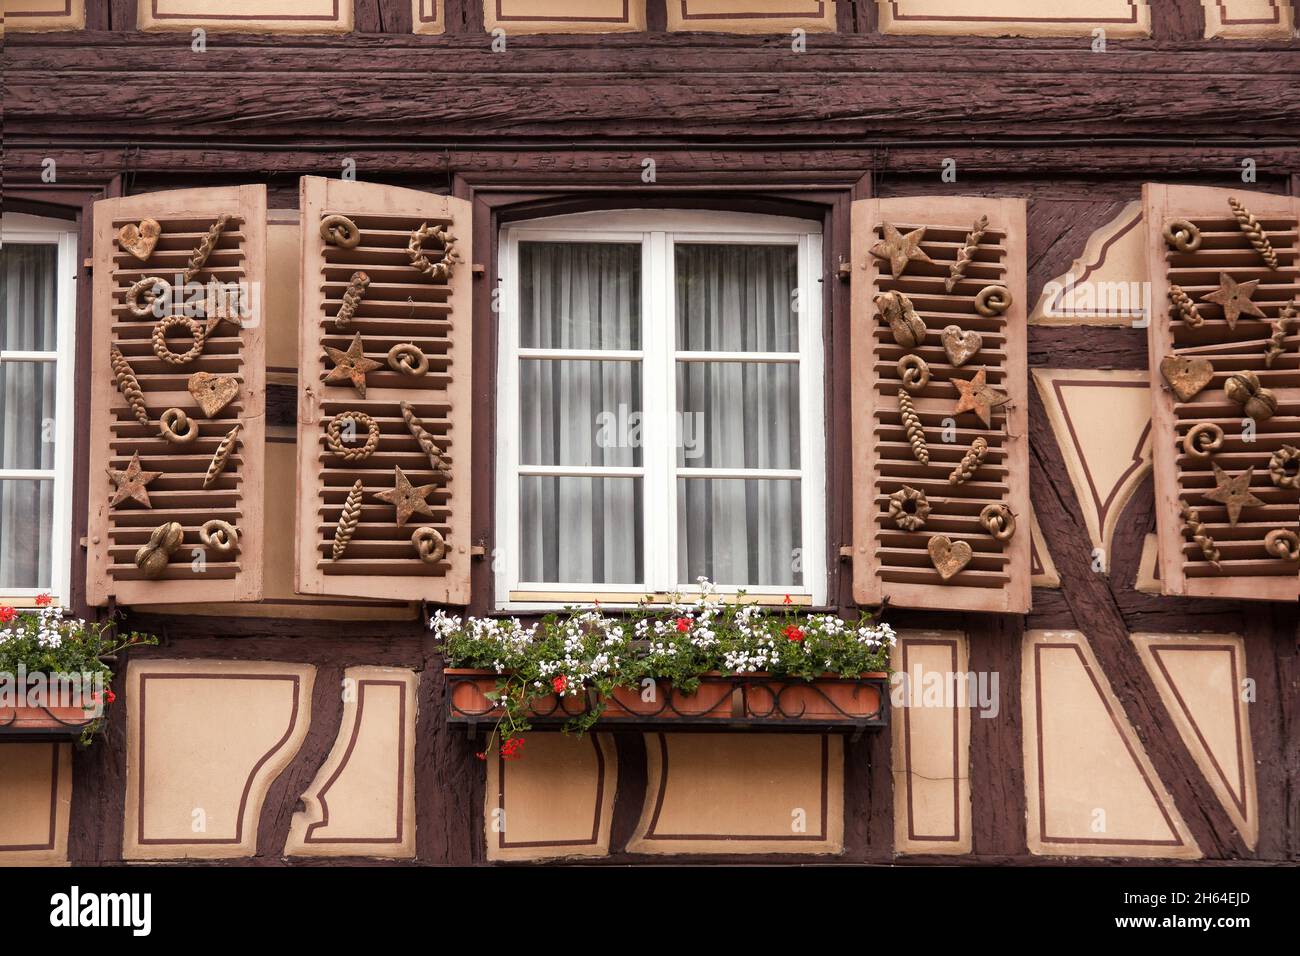 Colmar, France - 27 mai 2012 : une grande fenêtre décorée de produits de boulangerie sur une maison traditionnelle à colombages, Colmar, France Banque D'Images